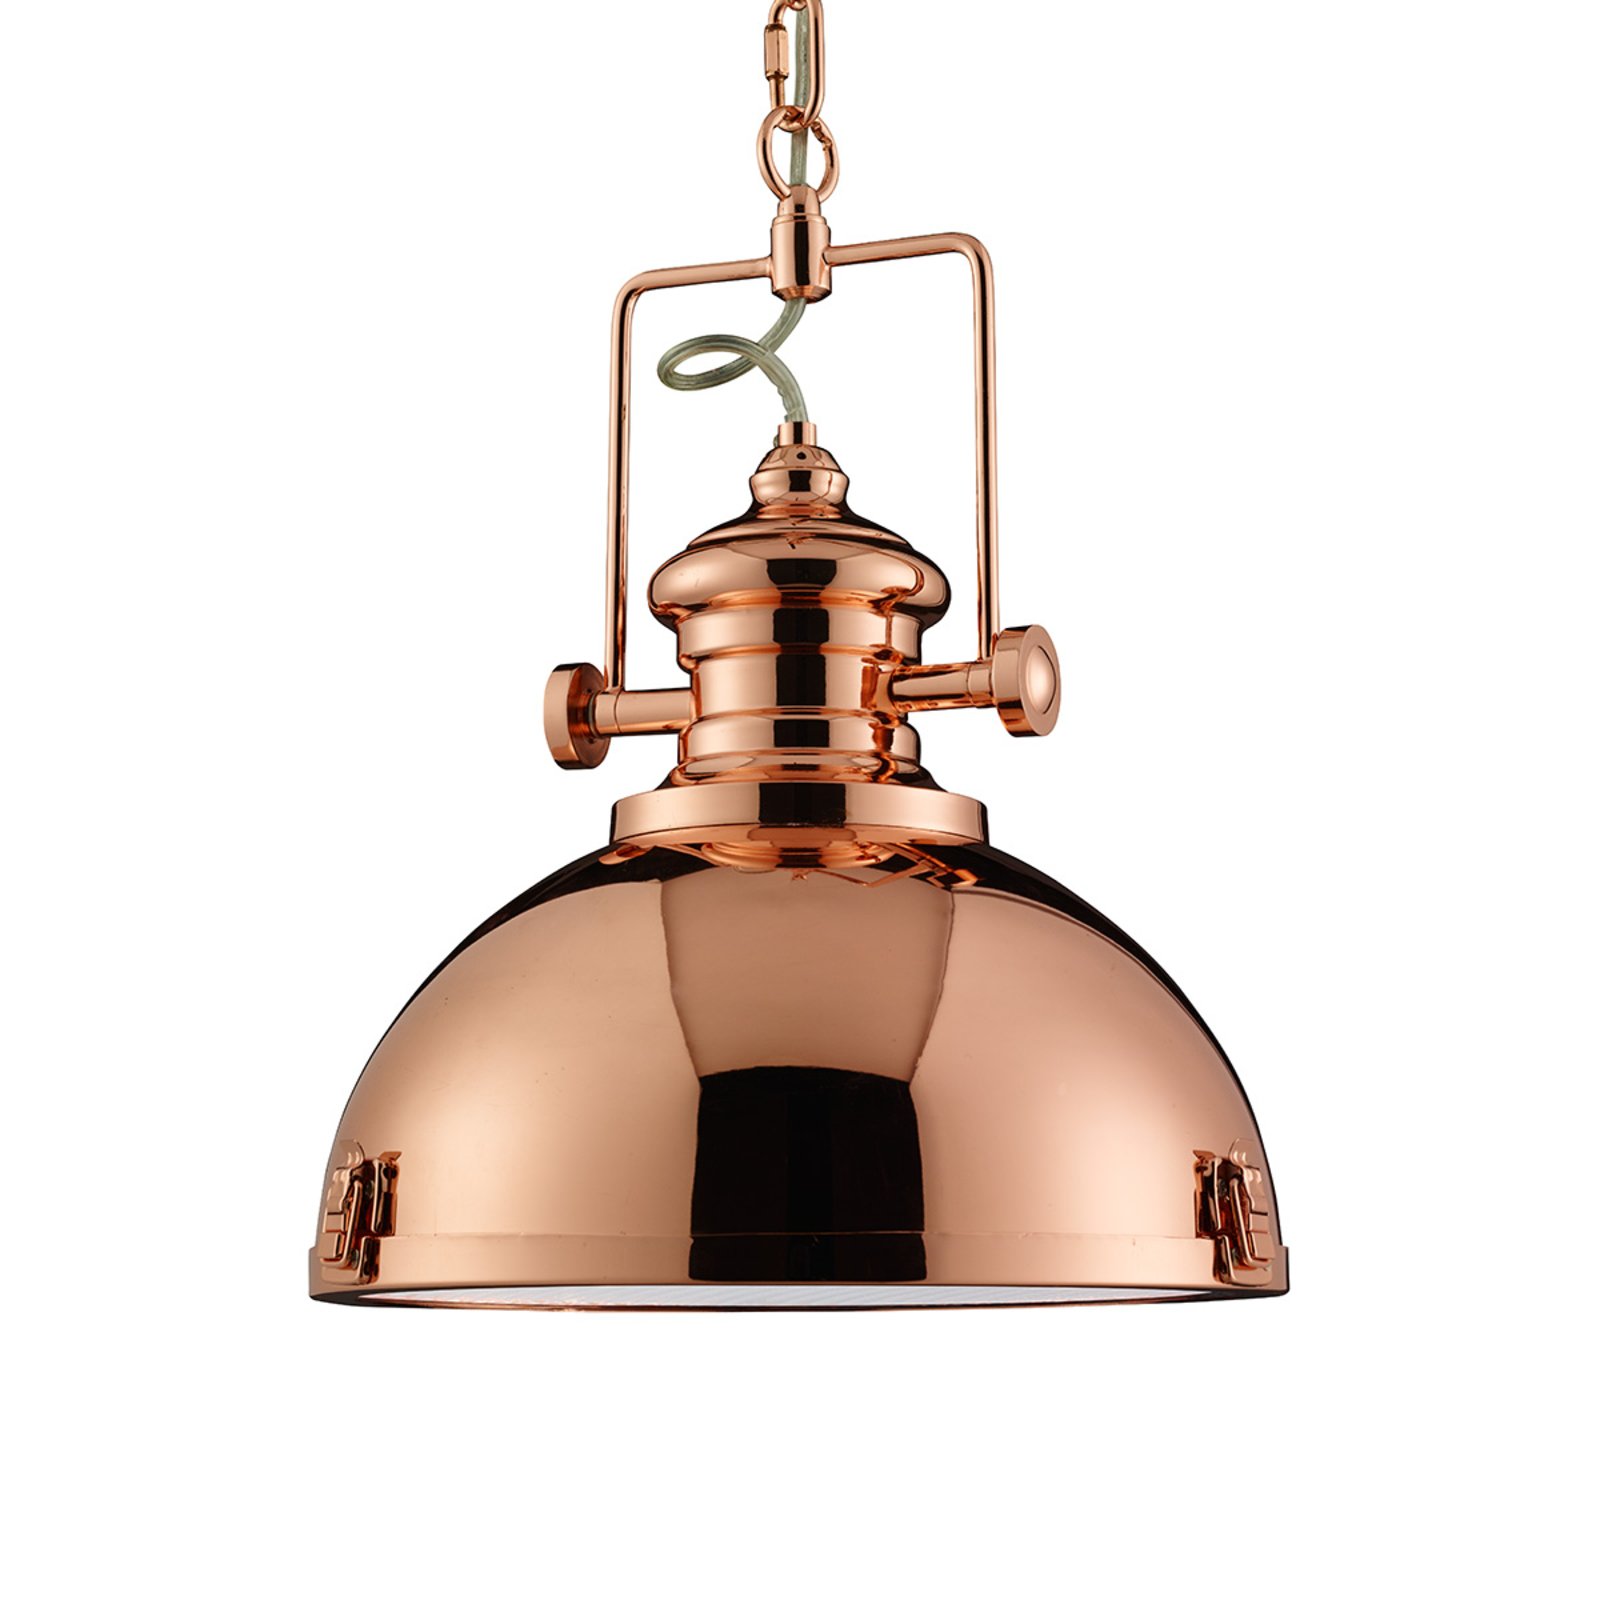 Koperkleurige hanglamp Metal industrieel ontwerp